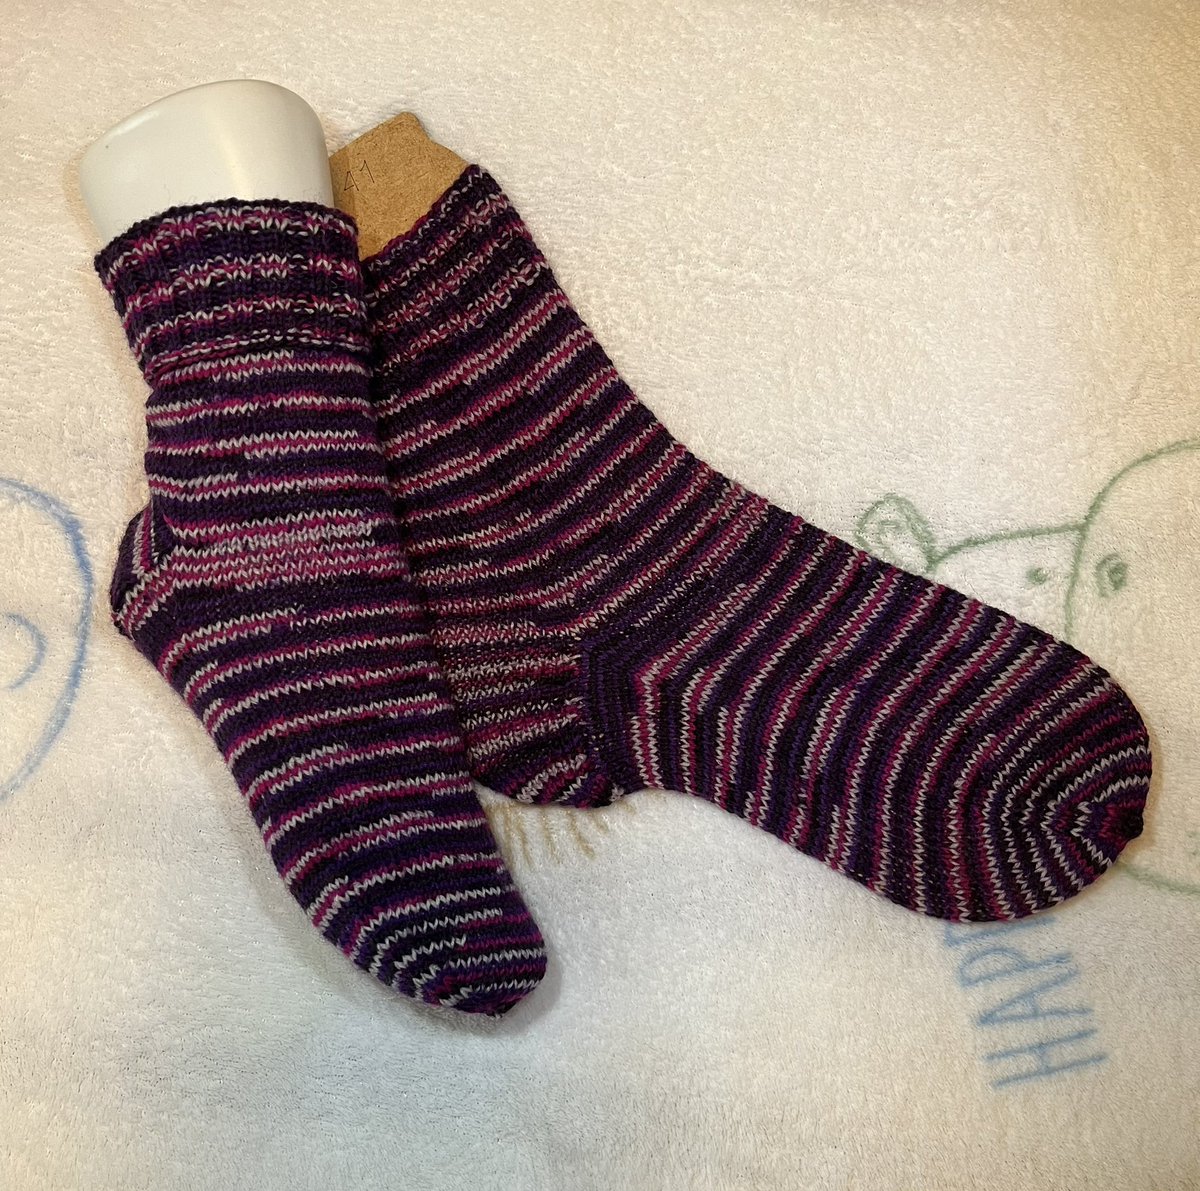 Sie sind fertig #stricken #sockenstricken #knitting #knittedsocks